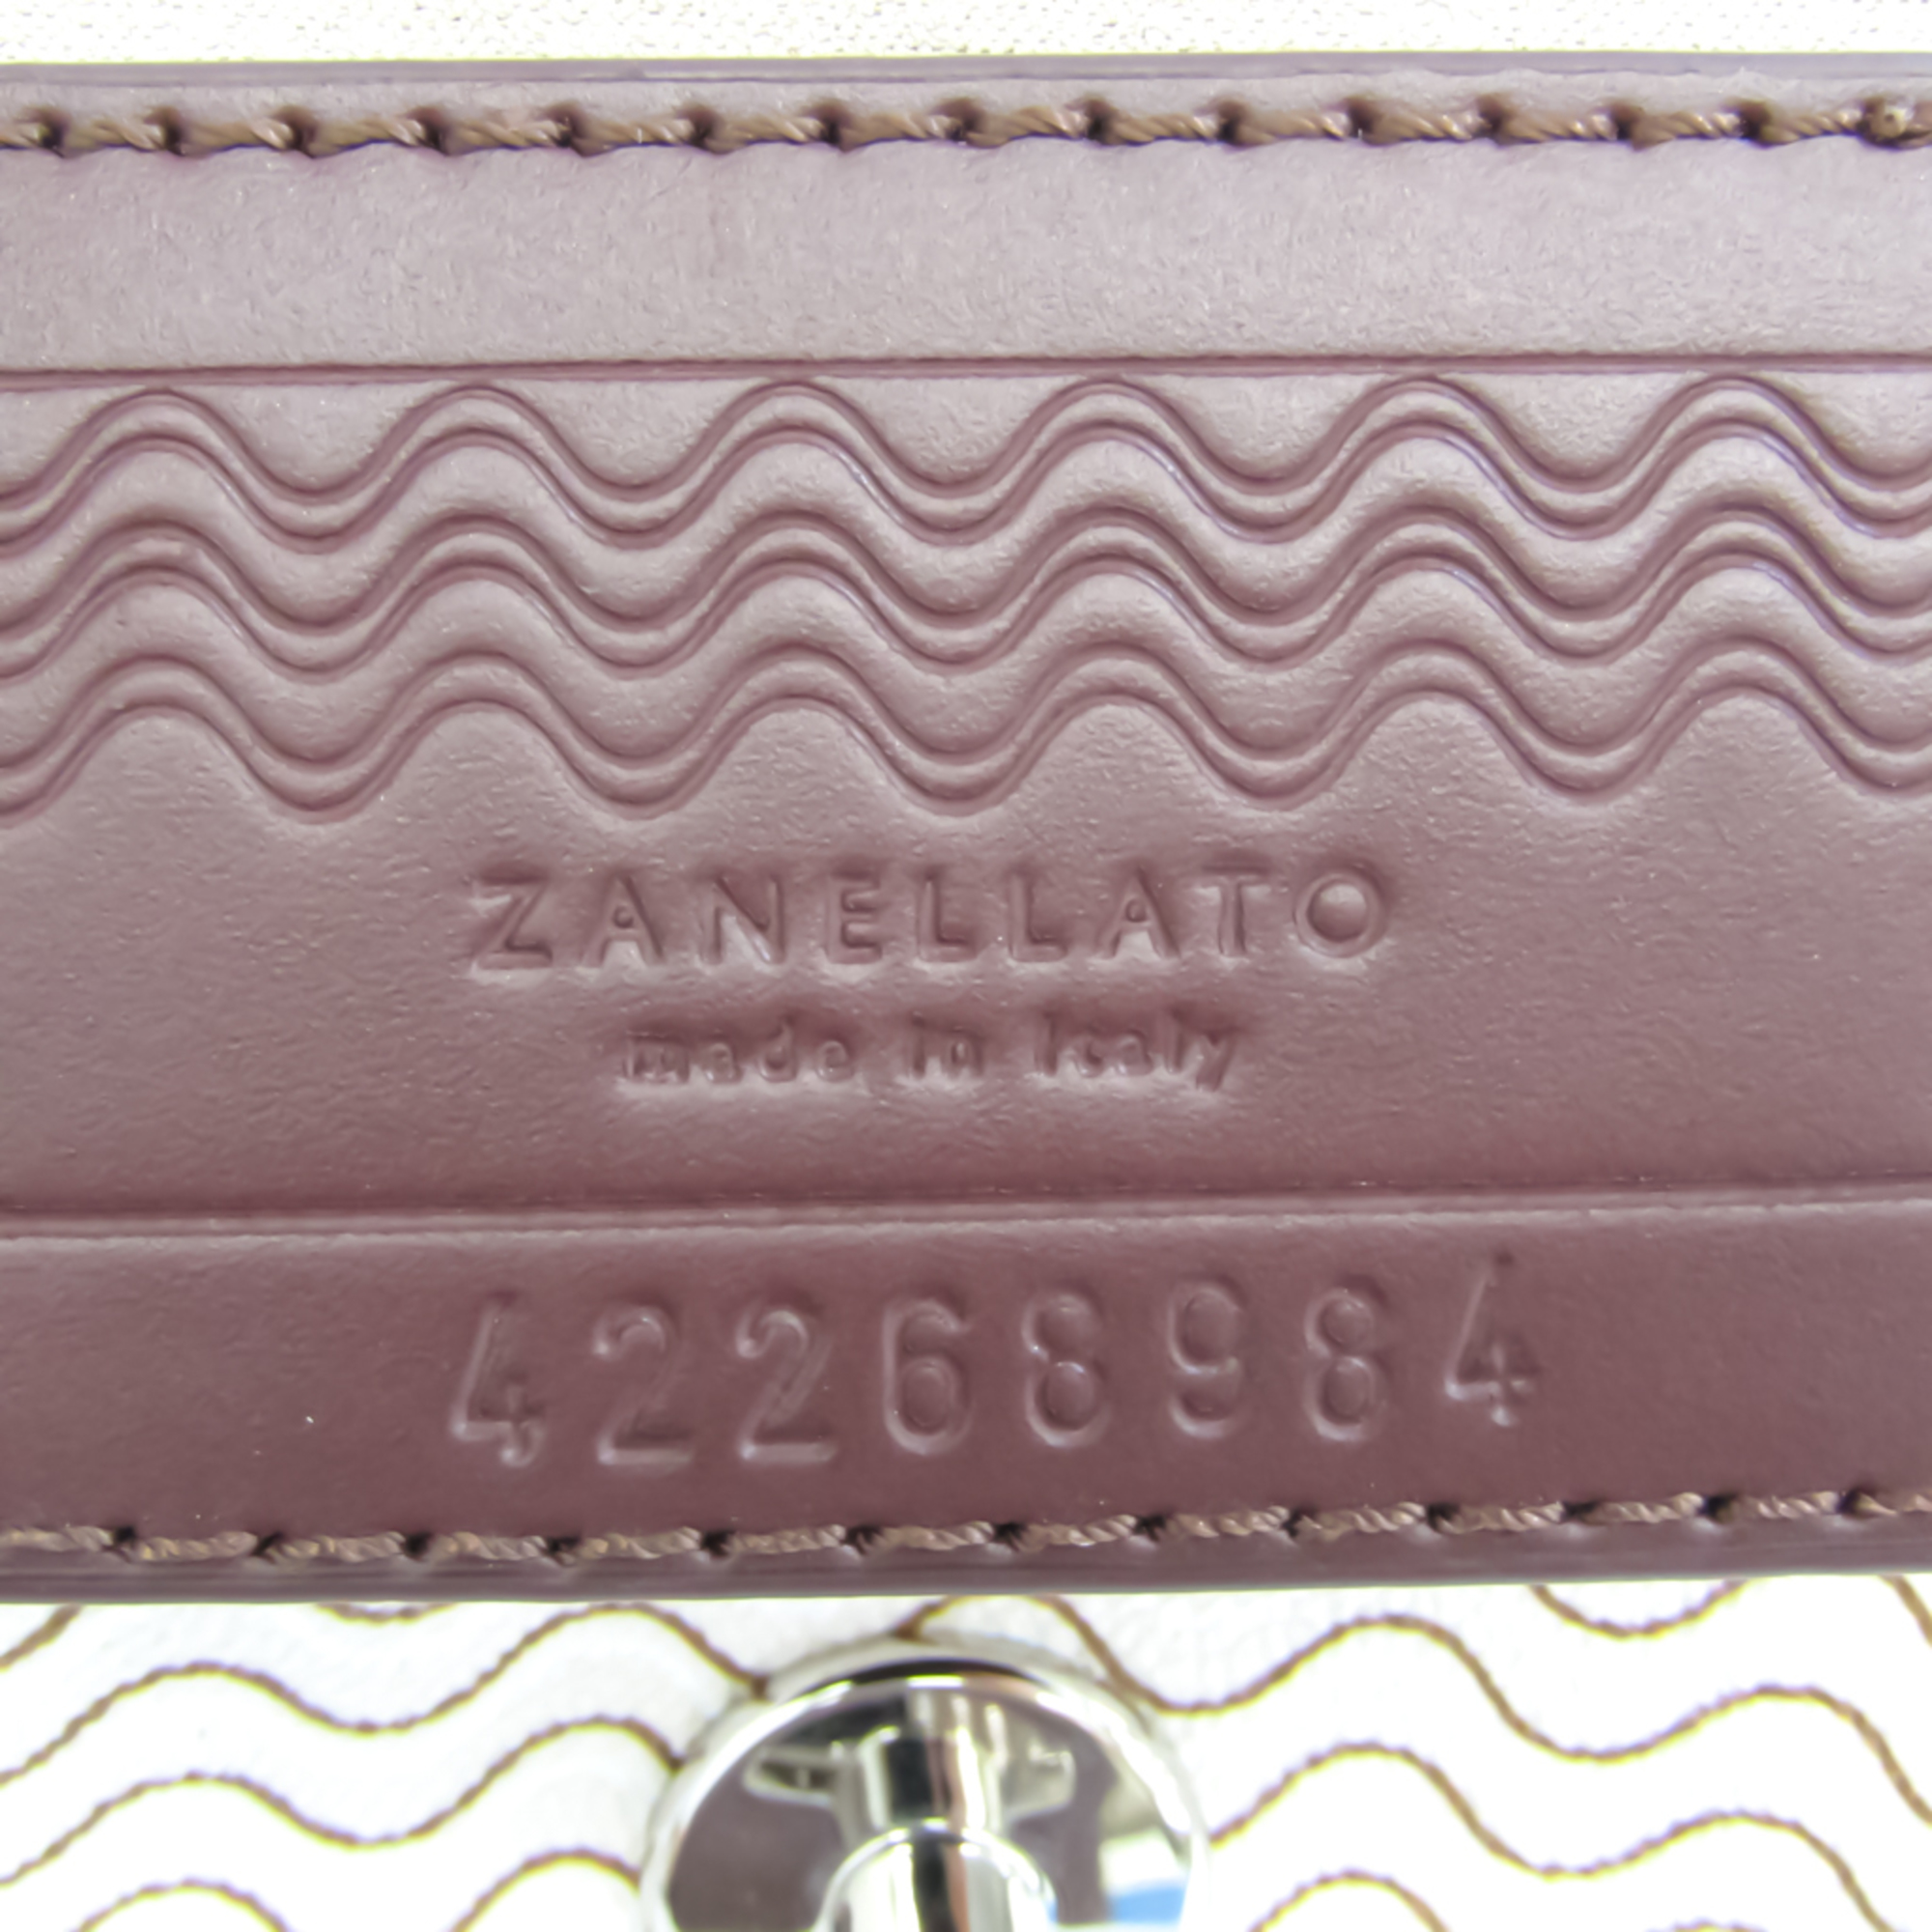 Zanellato Postina Mini Women's Leather,PVC Handbag,Shoulder Bag White